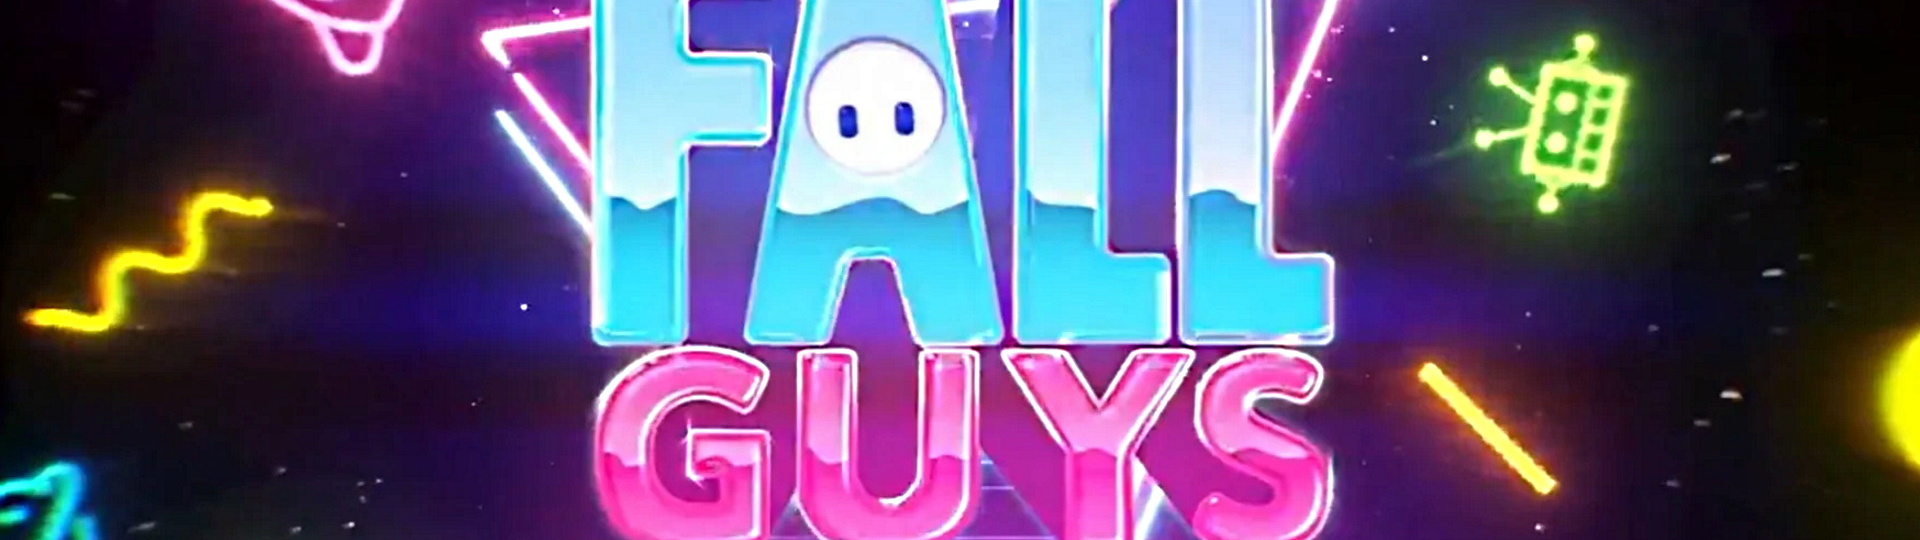 Fall Guys se v sezóně 4 vydají do budoucnosti | Novinky